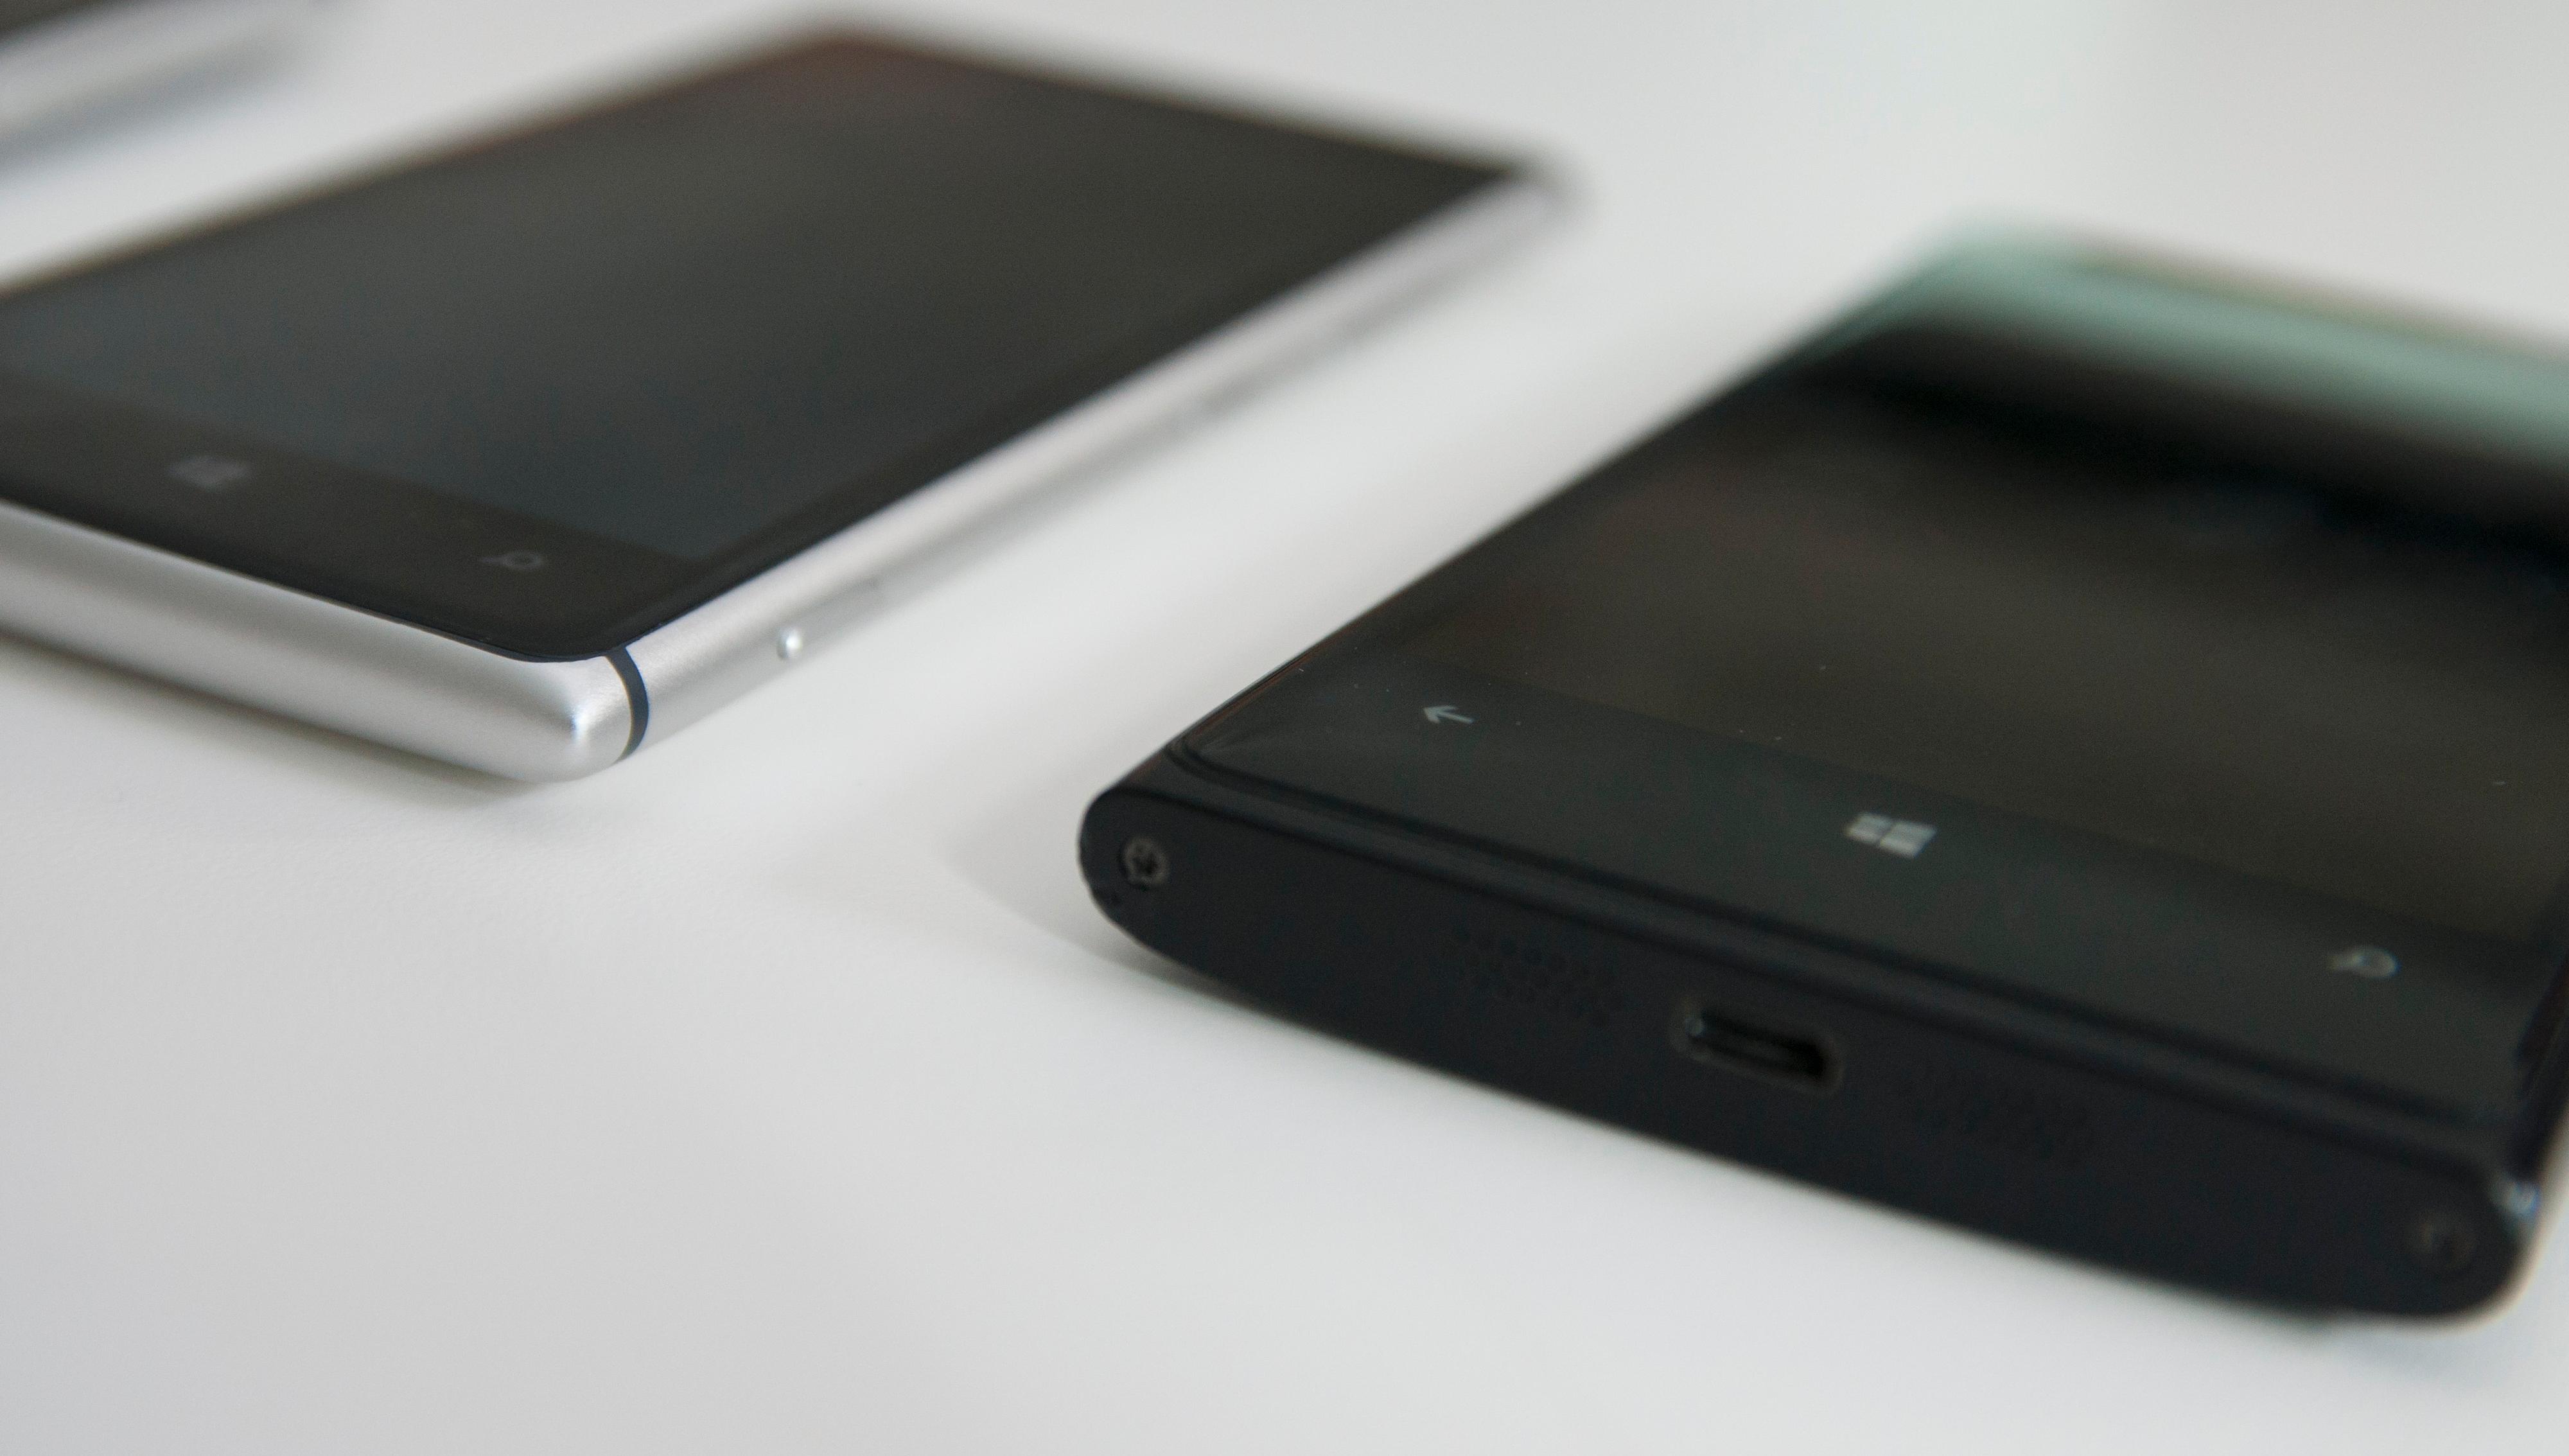 Stor forskjell: Lumia 925 til venstre. Lumia 920 til høyre.Foto: Finn Jarle Kvalheim, Amobil.no